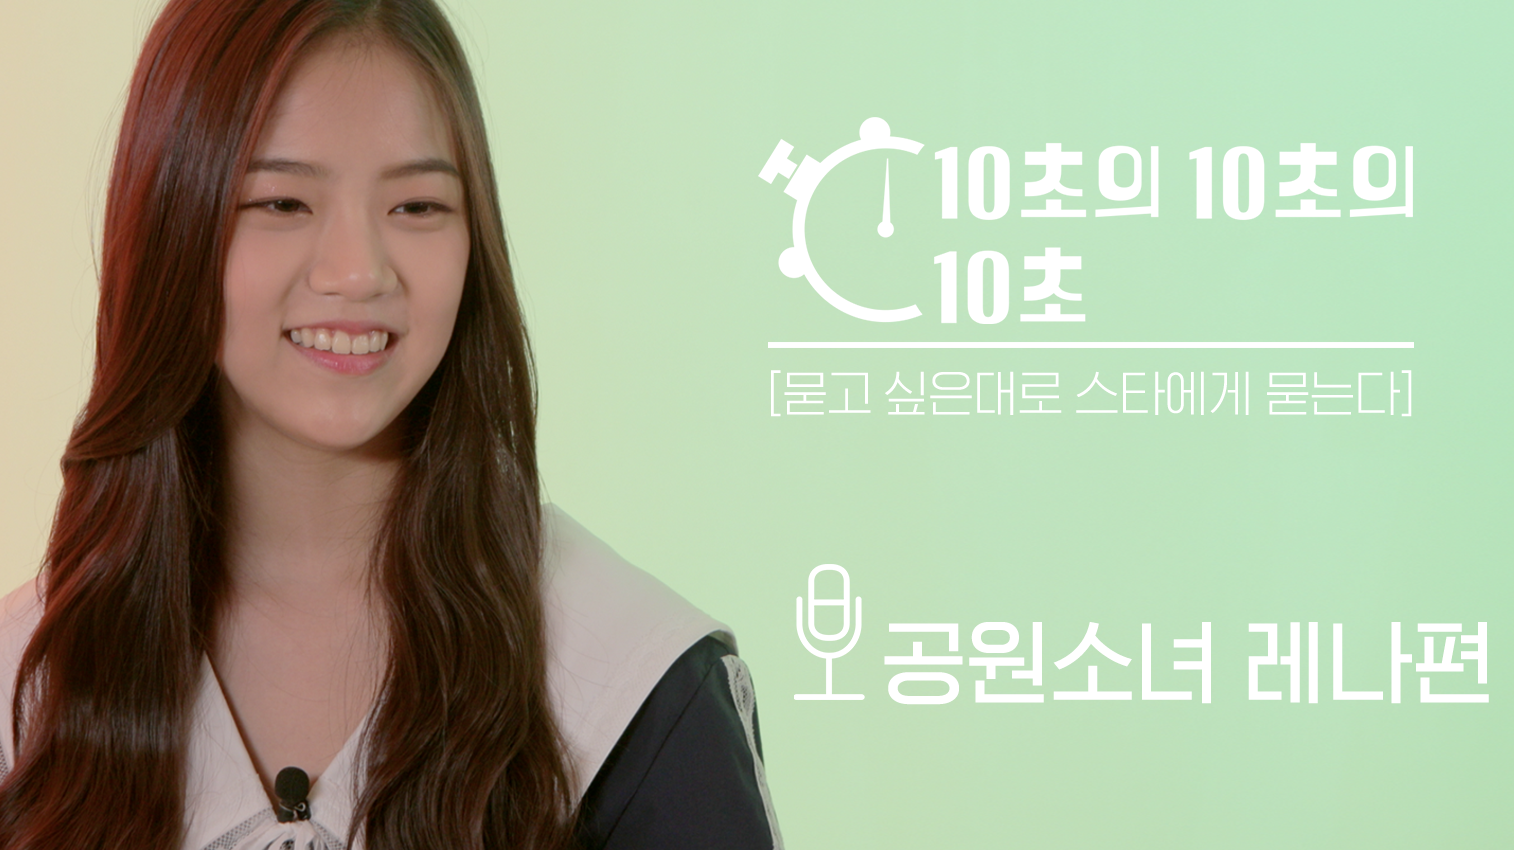 [10초의 10초의 10초] 한창 배고플 나이 17살 공원소녀 '레나' 편 (LENA of GWSN)